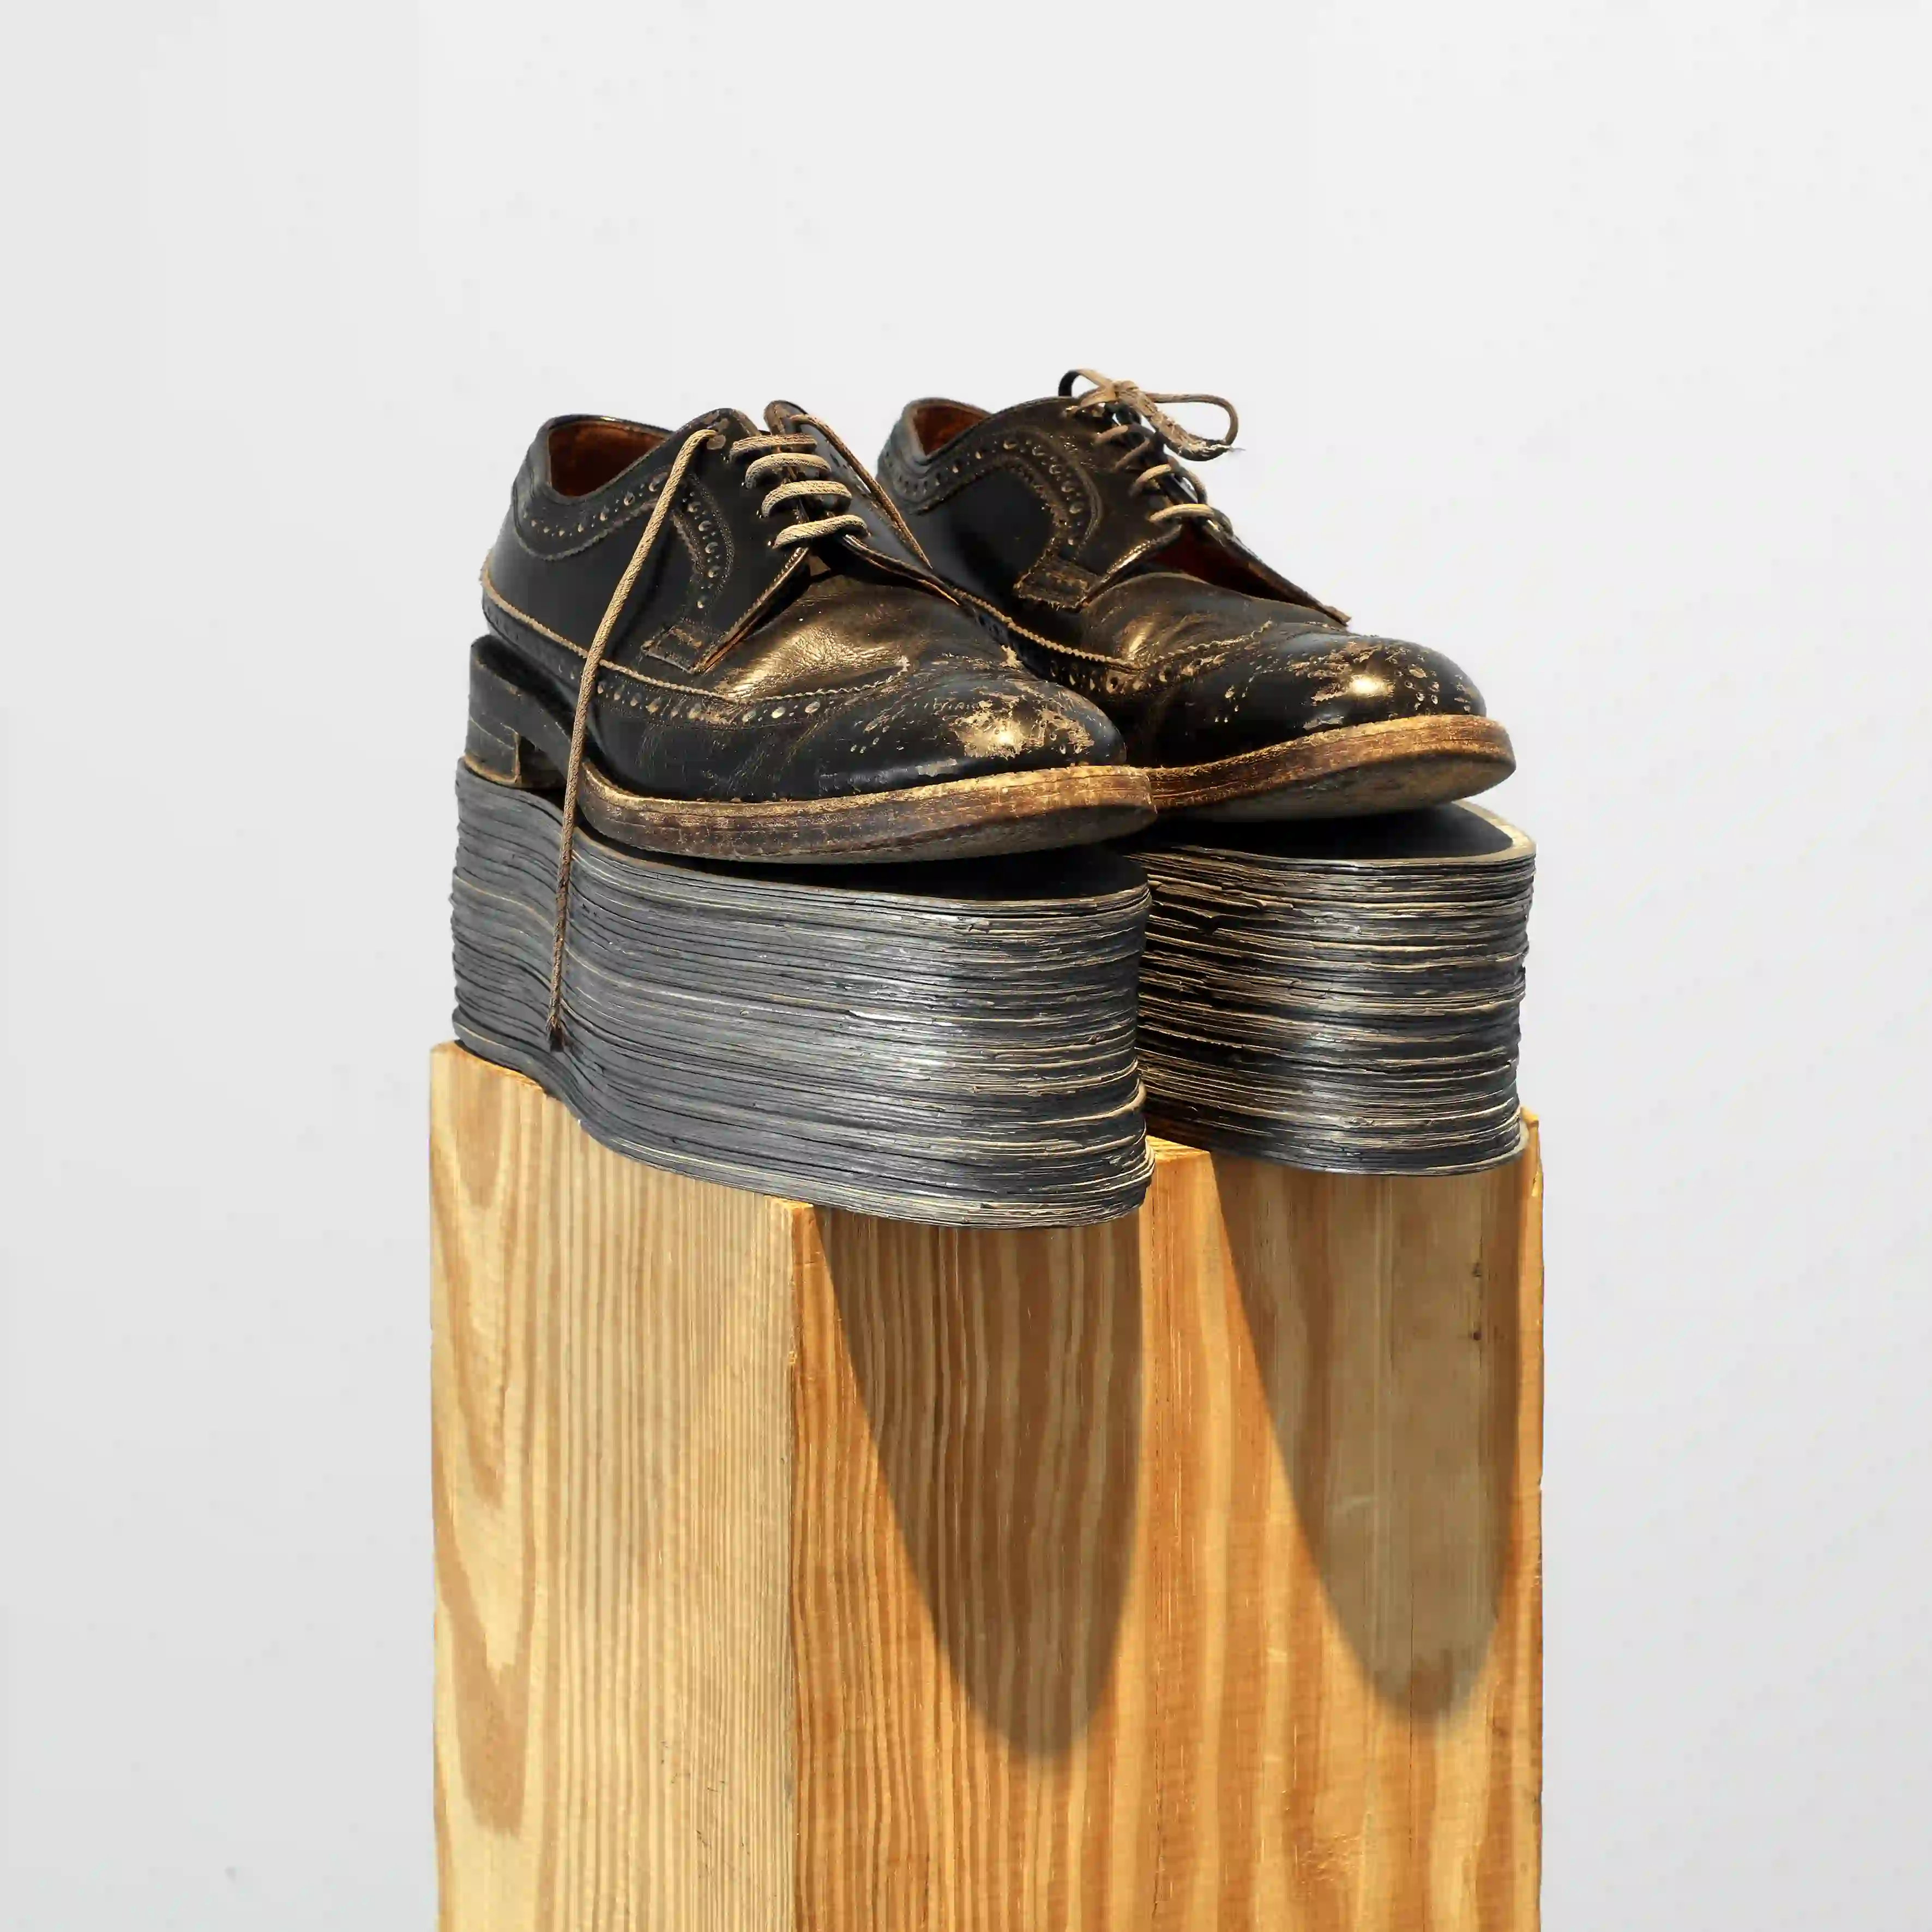 Jannis Kounellis: Untitled, 1989, leather shoes, lead insoles